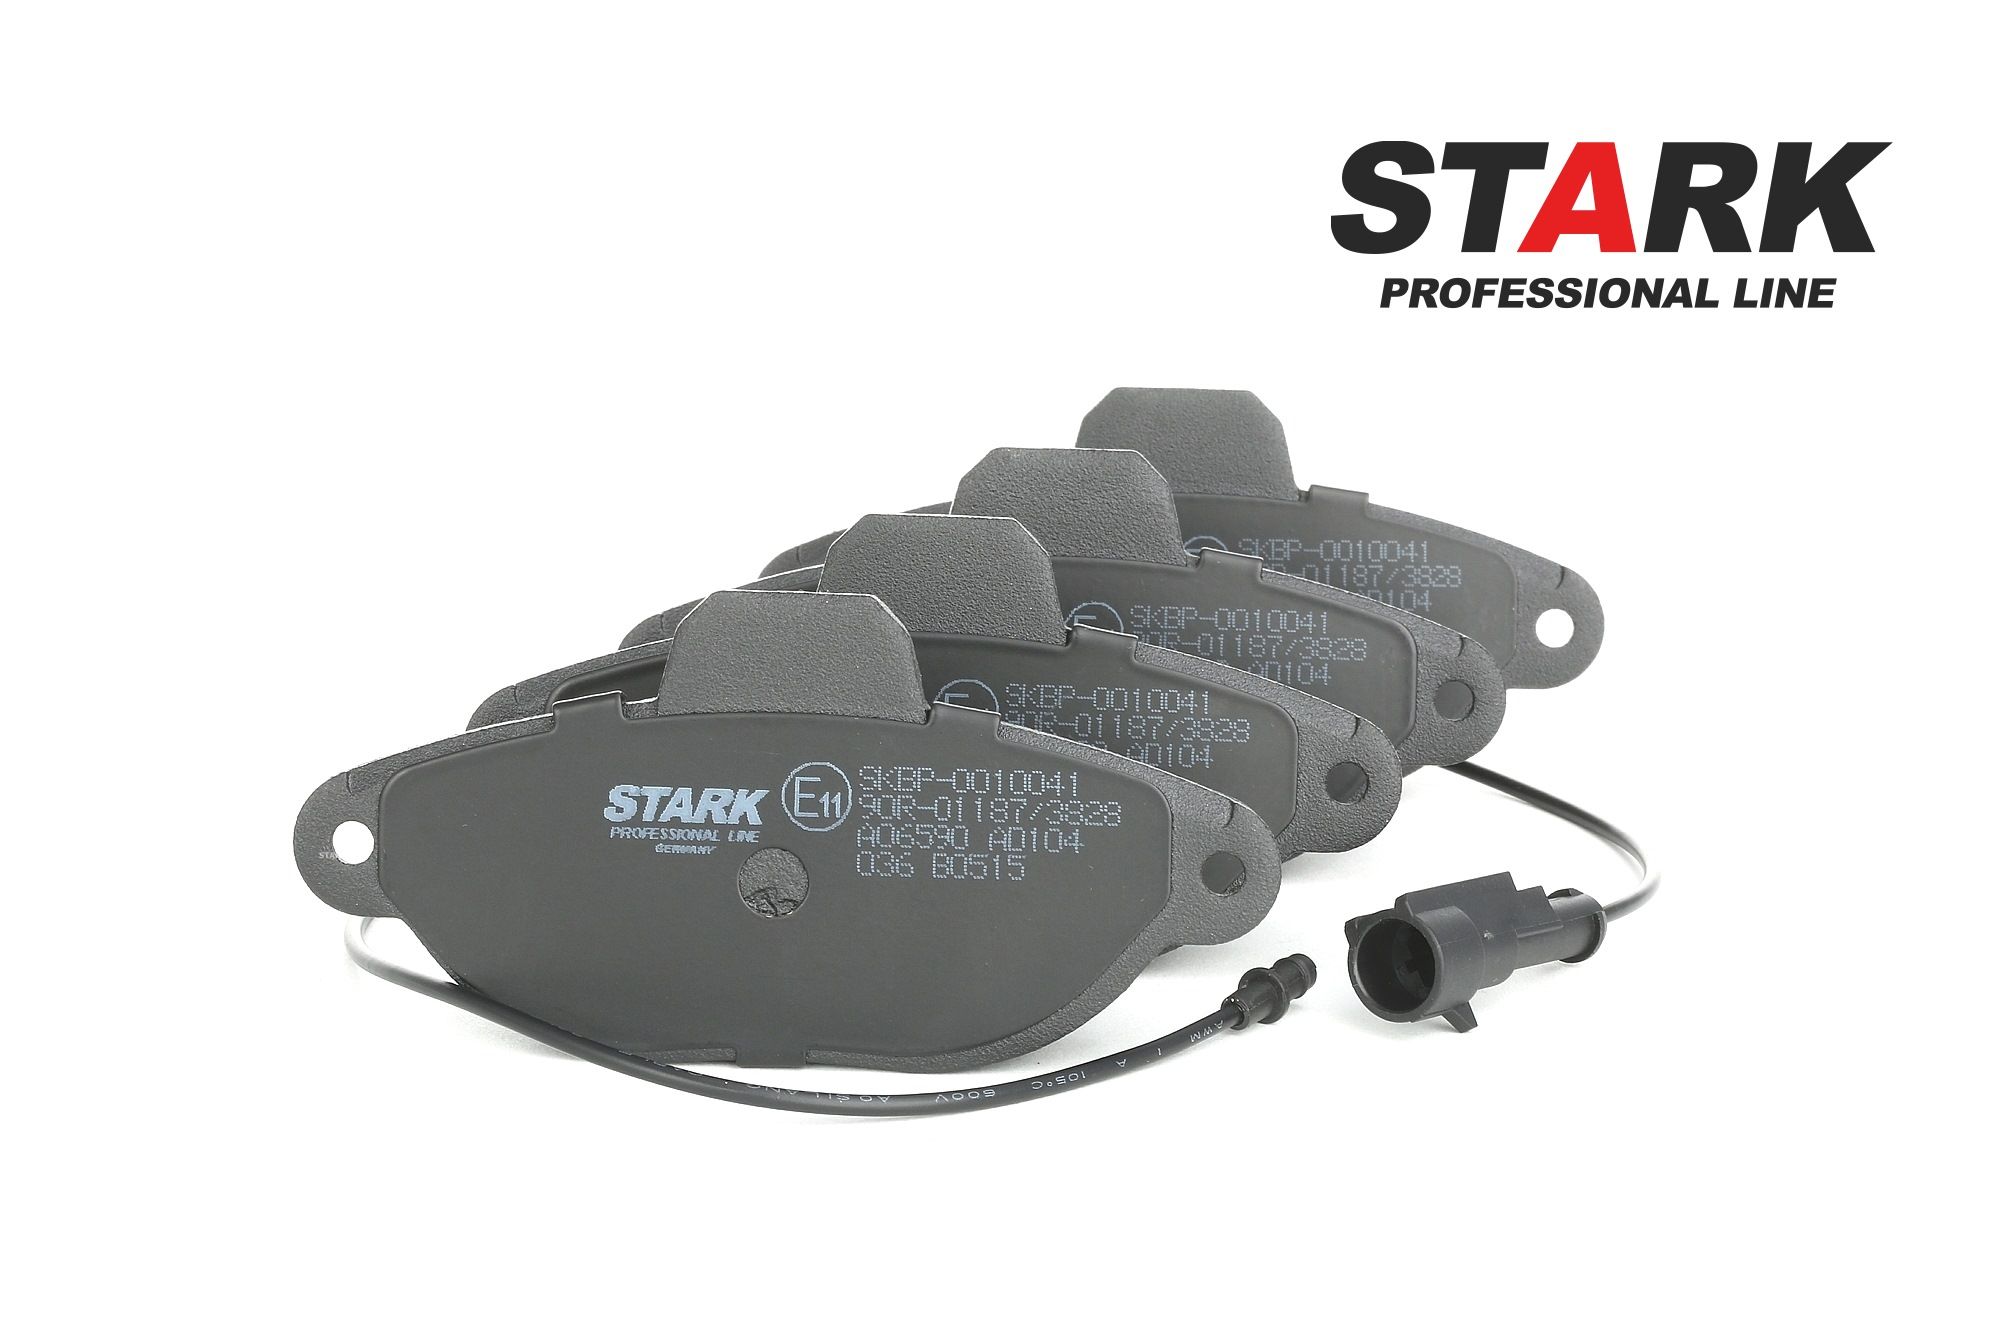 STARK SKBP-0010041 Kit pastiglie freni Assale anteriore, Con contatto segnalazione usura